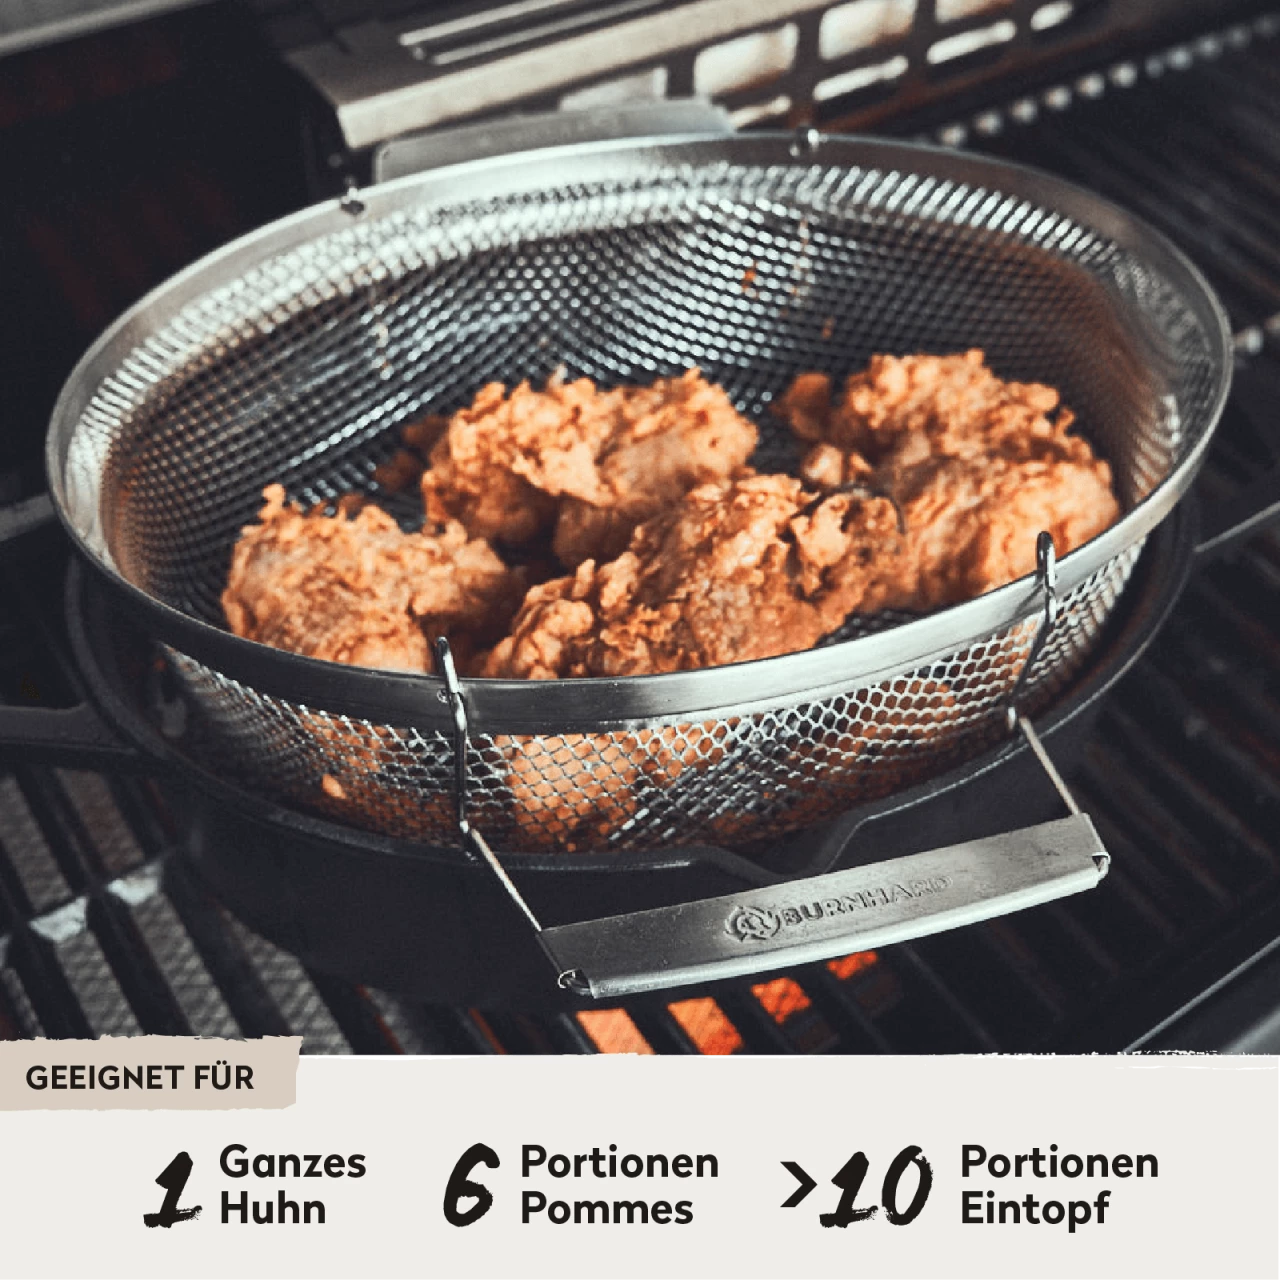 Gusseisenbräter mit Frittierkorb auf Grill geeignet für 1 ganzes Huhn, 6 Portionen Pommes oder über 10 Portionen Eintopf